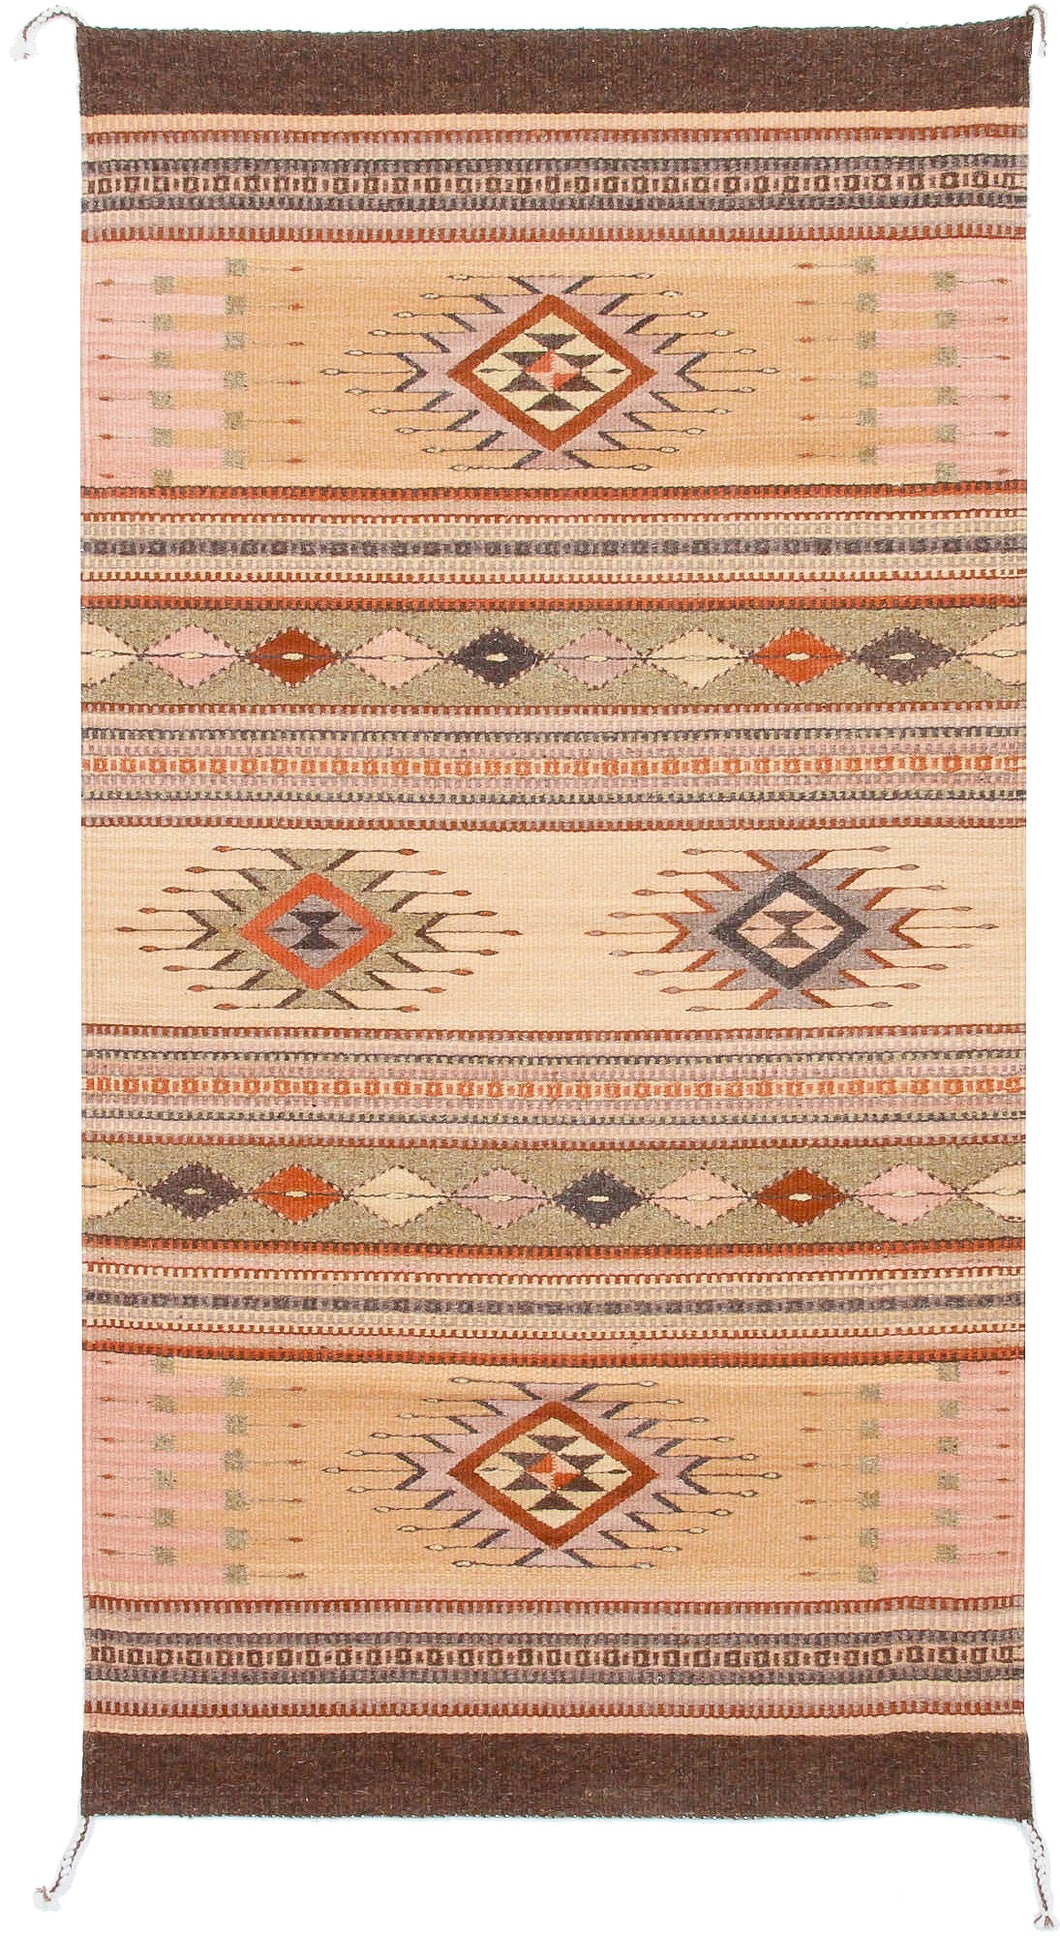 Handwoven Zapotec Indian Rug - Tubac Sunset Wool Oaxacan Textile